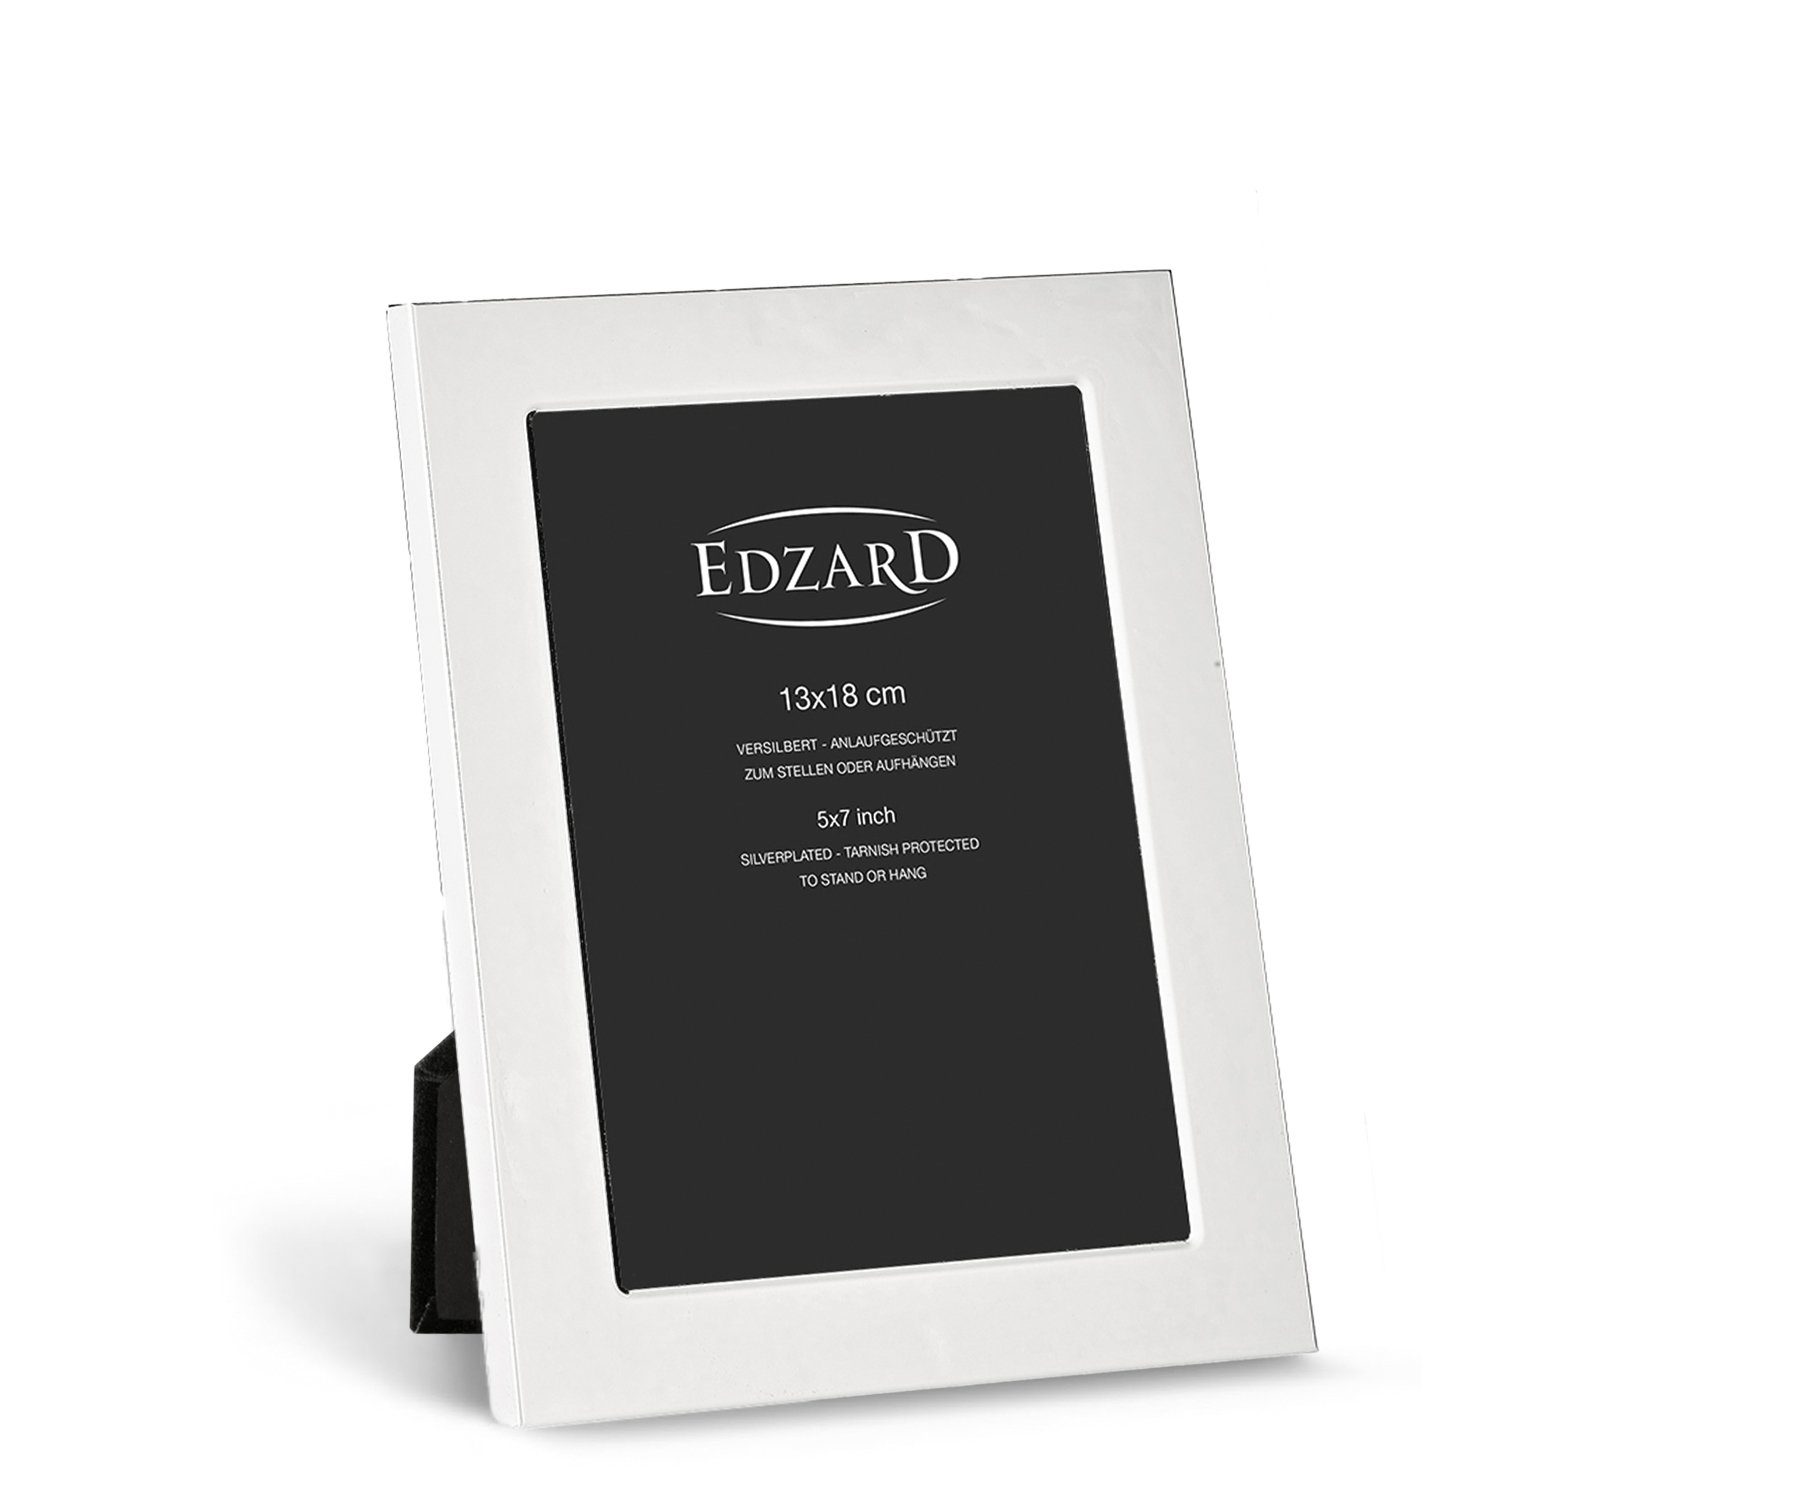 EDZARD Bilderrahmen Altamura, versilbert und anlaufgeschützt, für 13x18 cm Foto